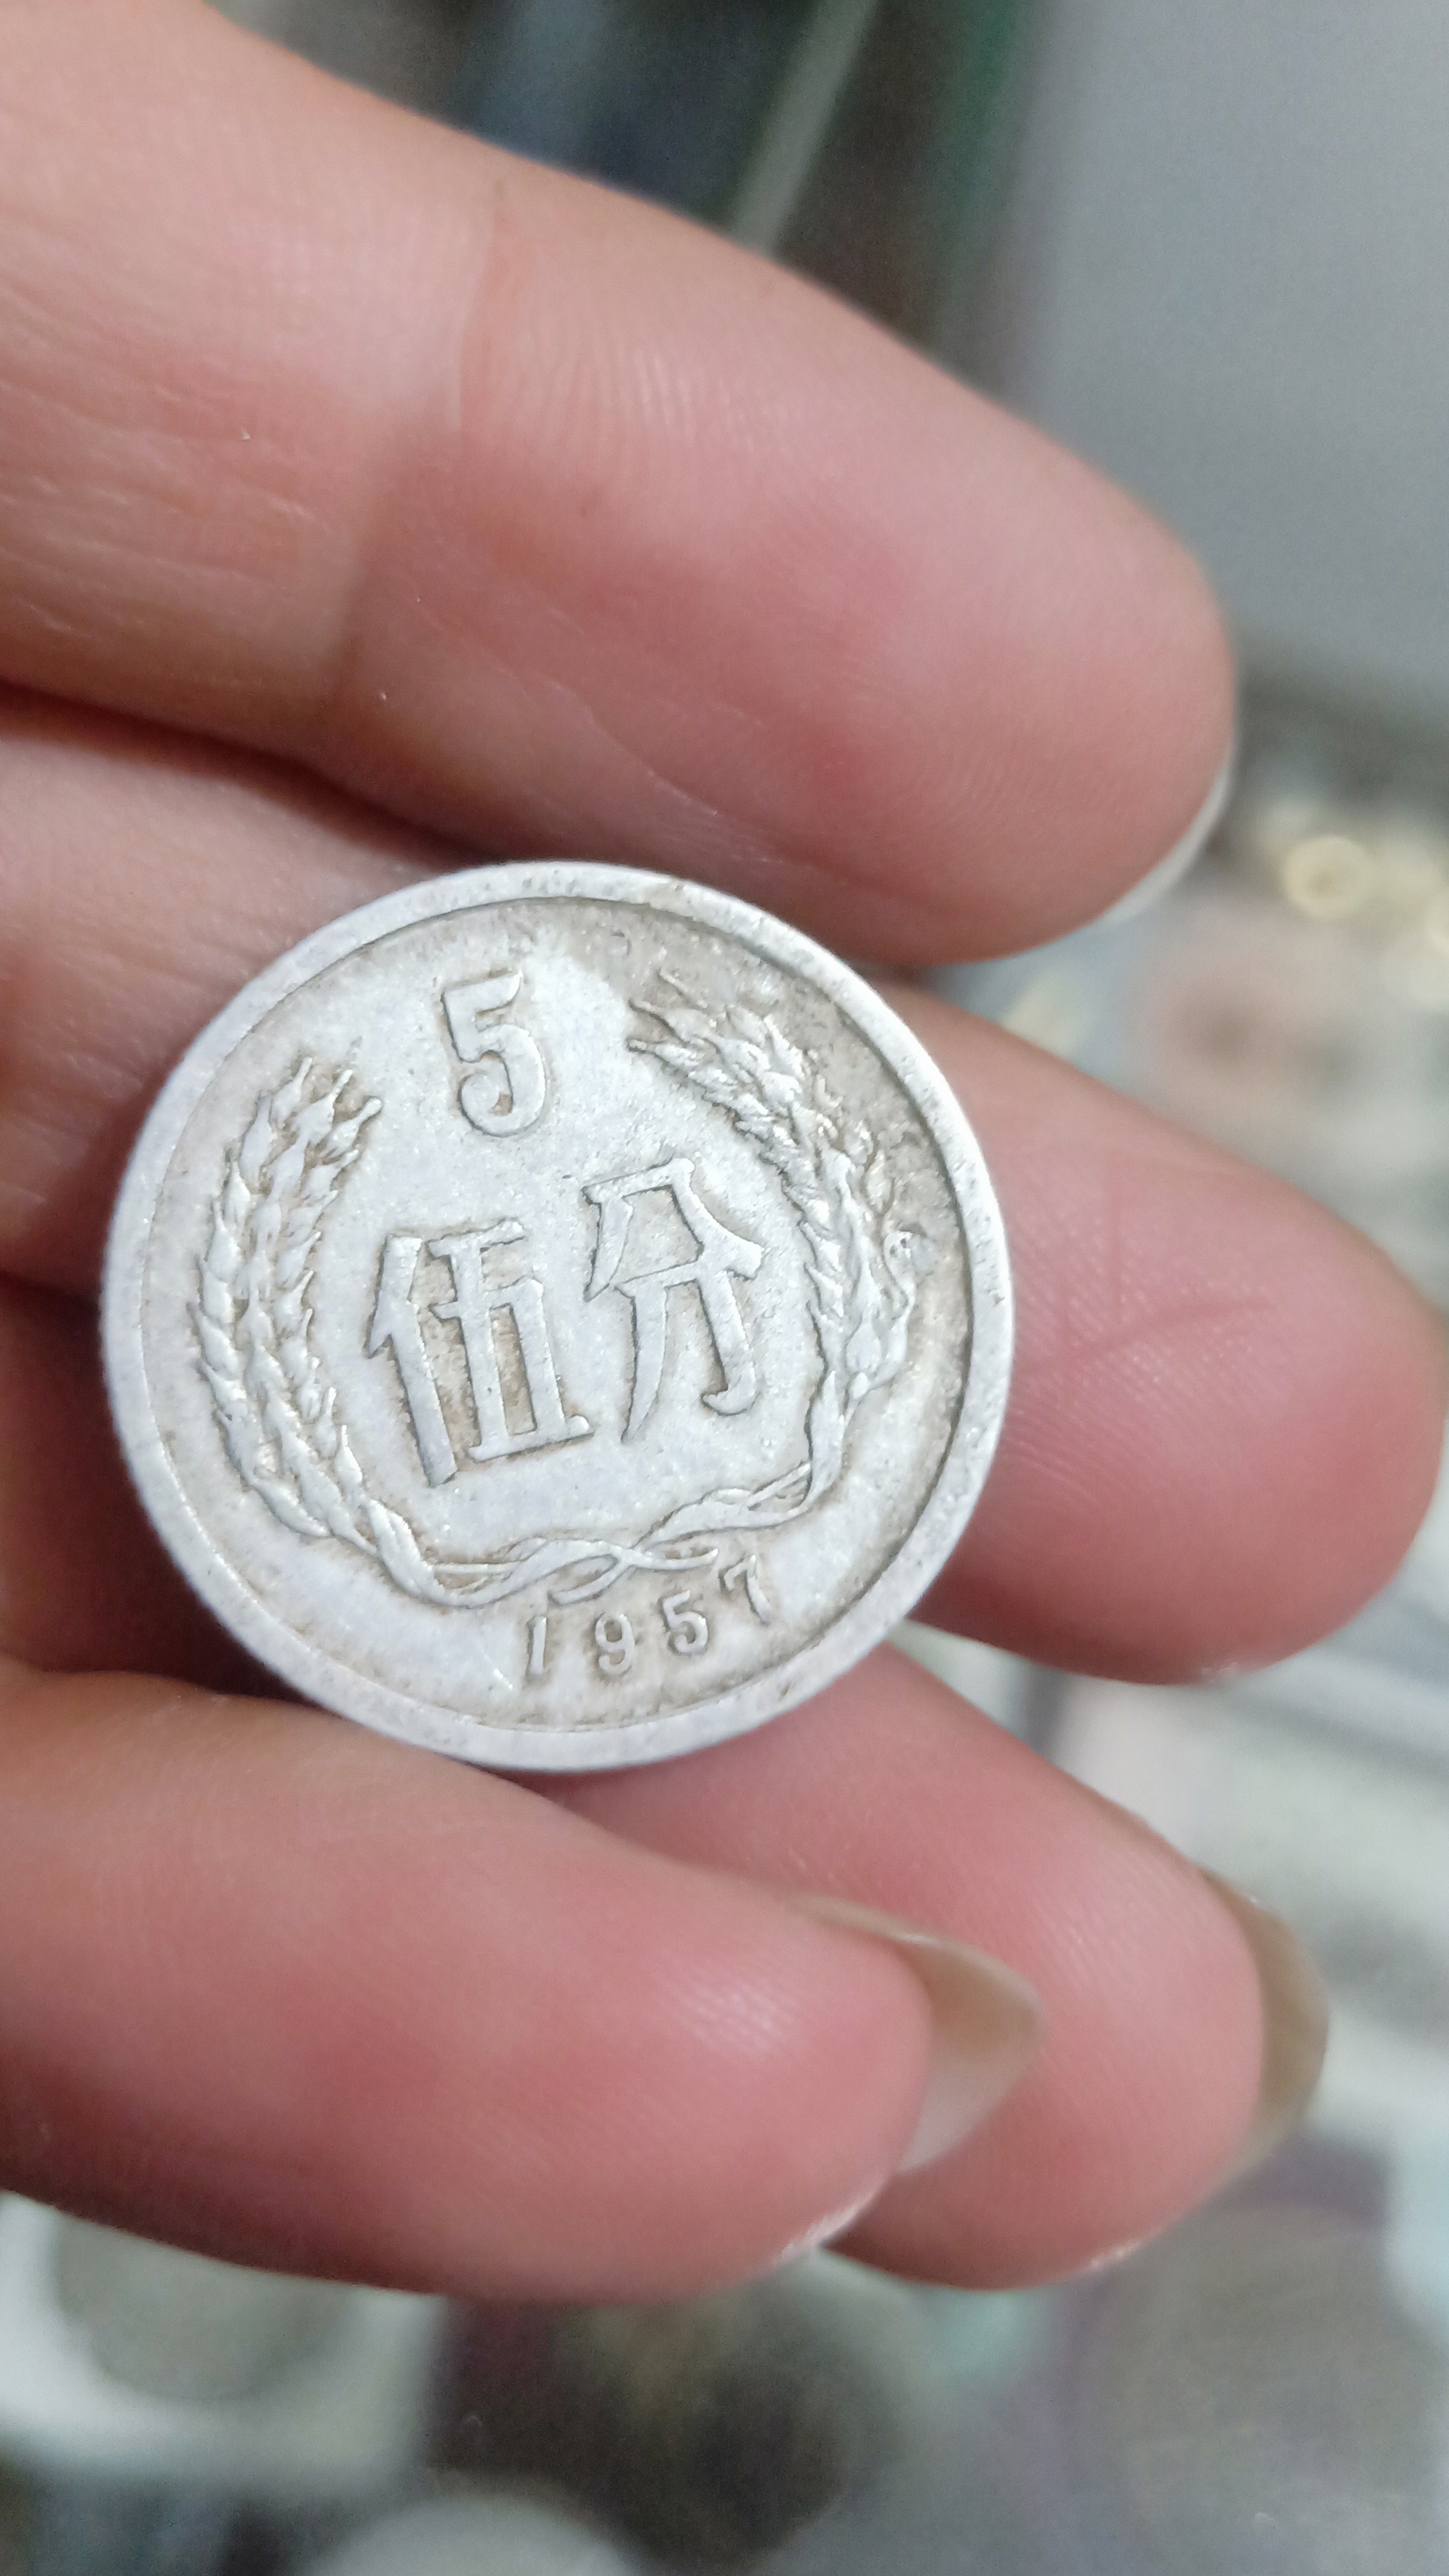 1955年5分硬币币王之一,稀少品种,收藏价值极大